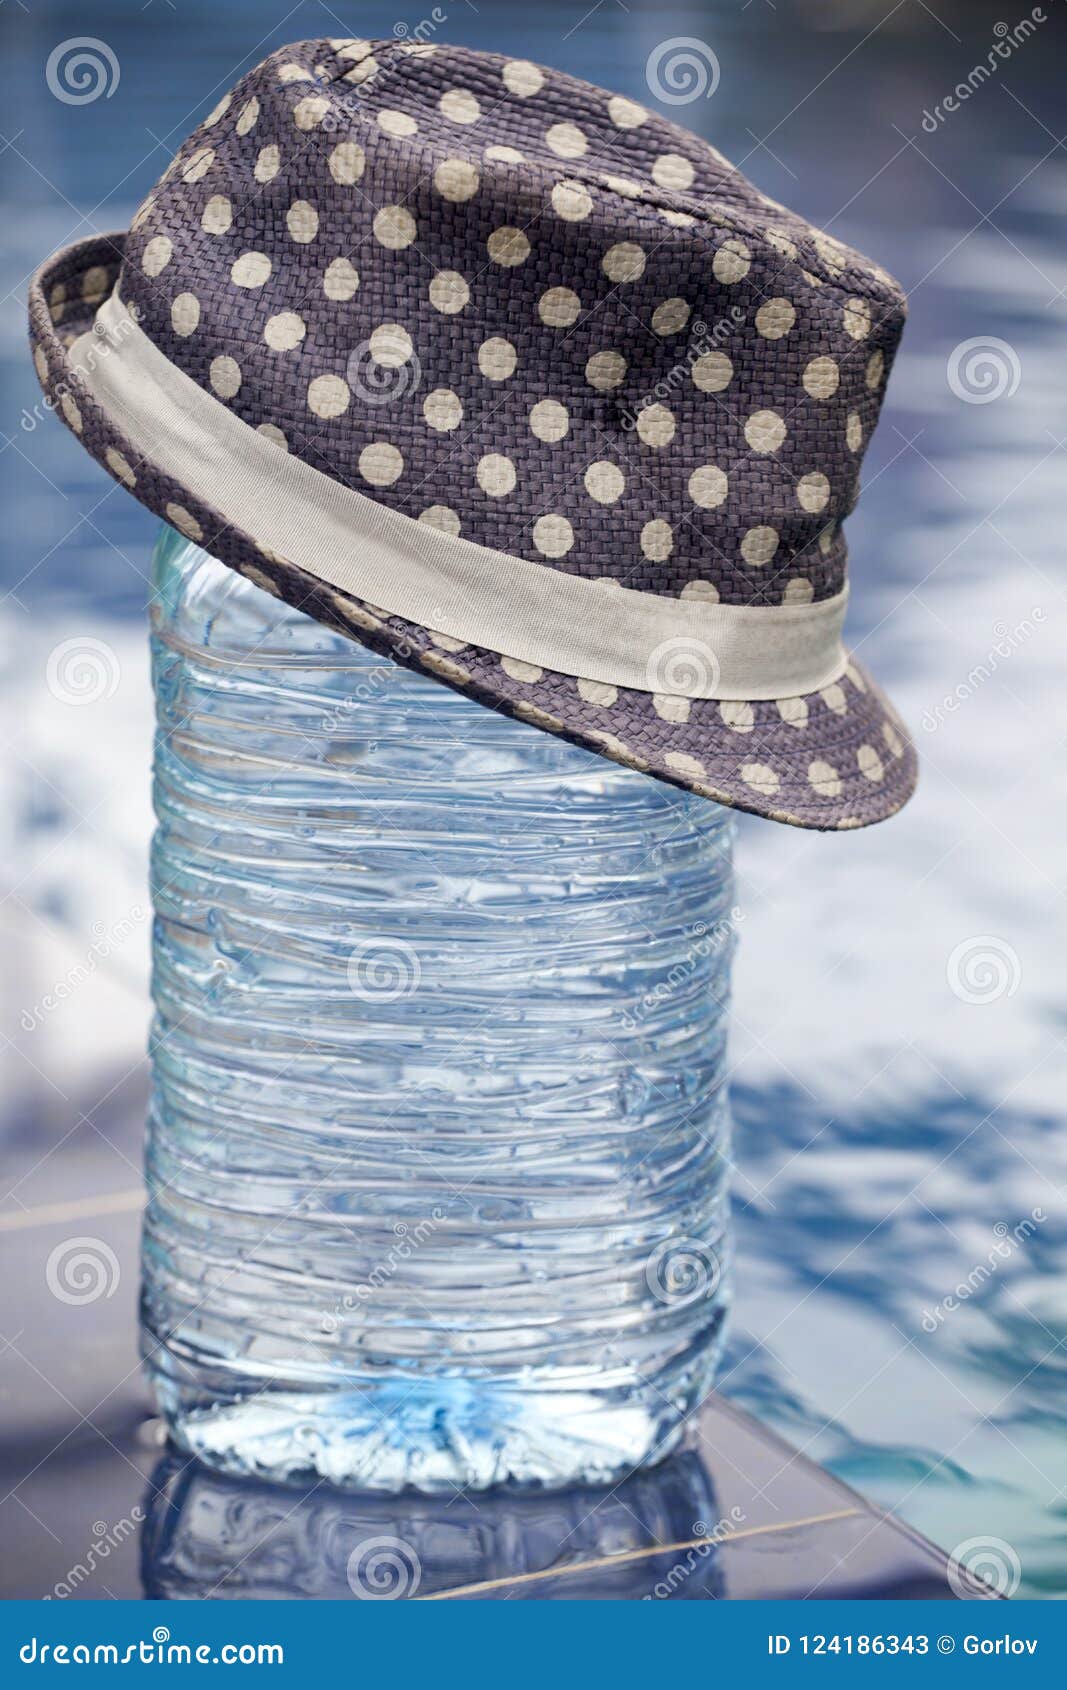 https://thumbs.dreamstime.com/z/big-plastic-bottle-fresh-water-hat-big-plastic-bottle-fresh-water-hat-summer-garden-124186343.jpg